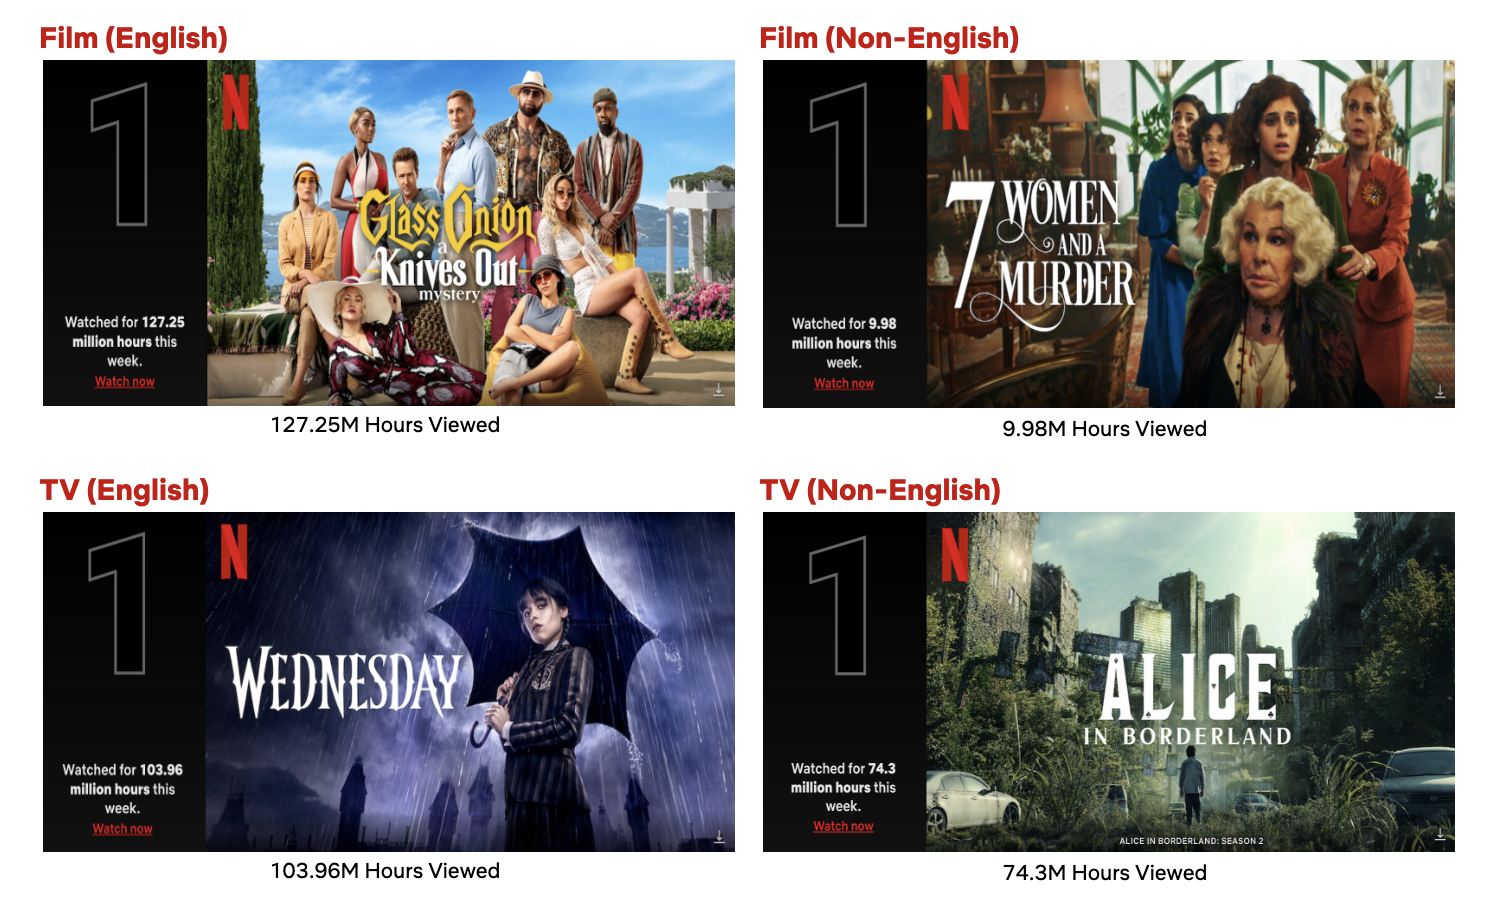 Top 10 da Semana de 19 de dezembro: Glass Onion: Um Mistério de Knives Out  conquista Top 1 e Emily em Paris Temporada 3 é Top 2 - About Netflix